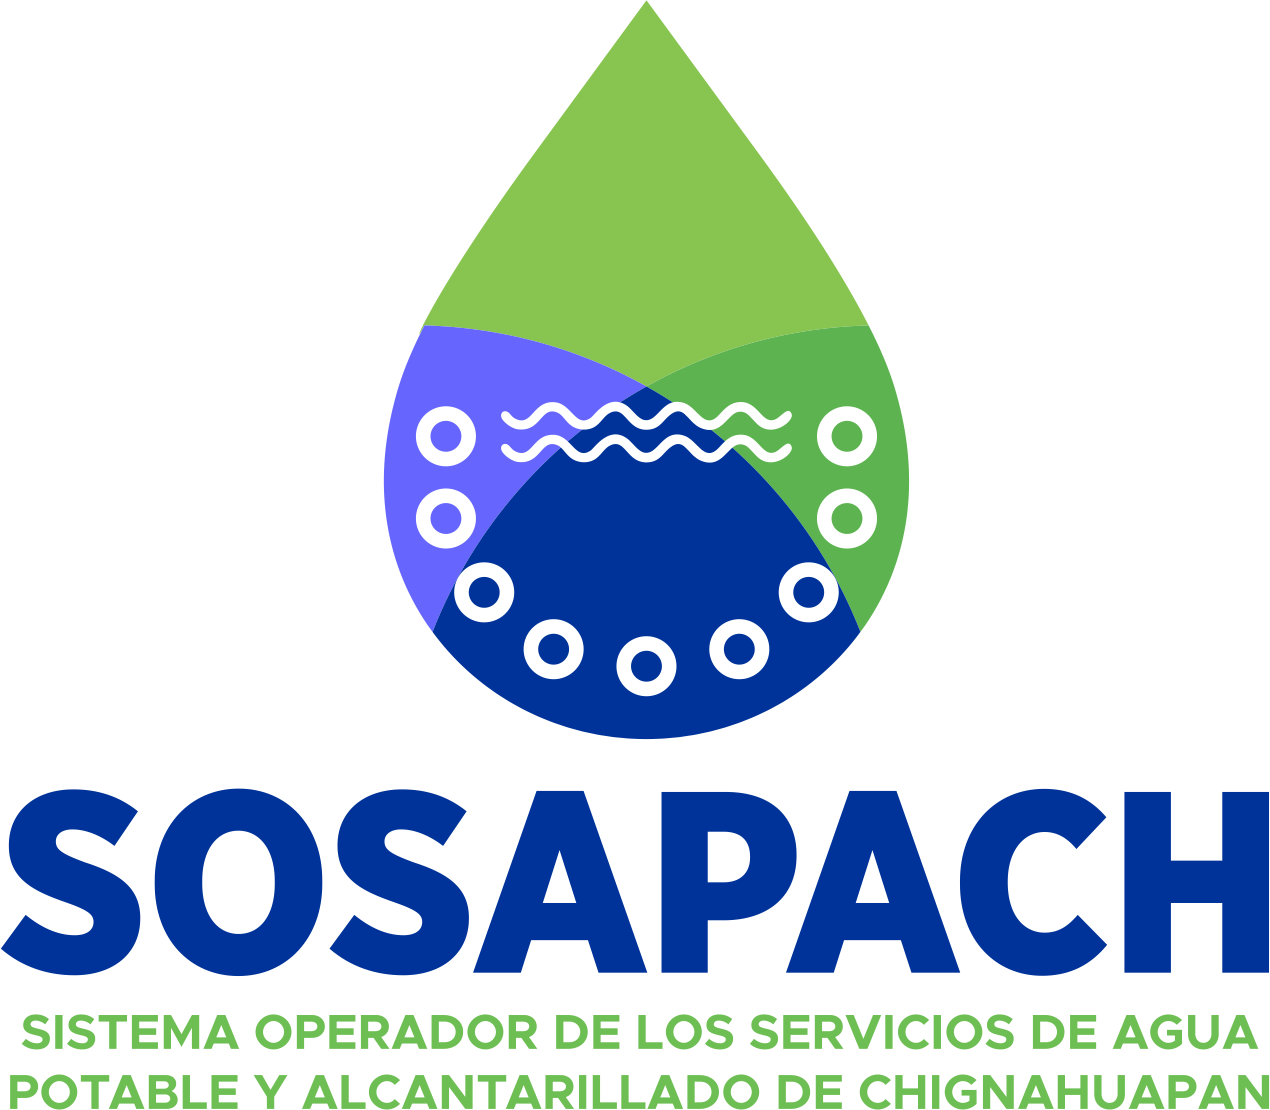 Sistema Operador de Agua Potable y Alcantarillado de Chignahuapan